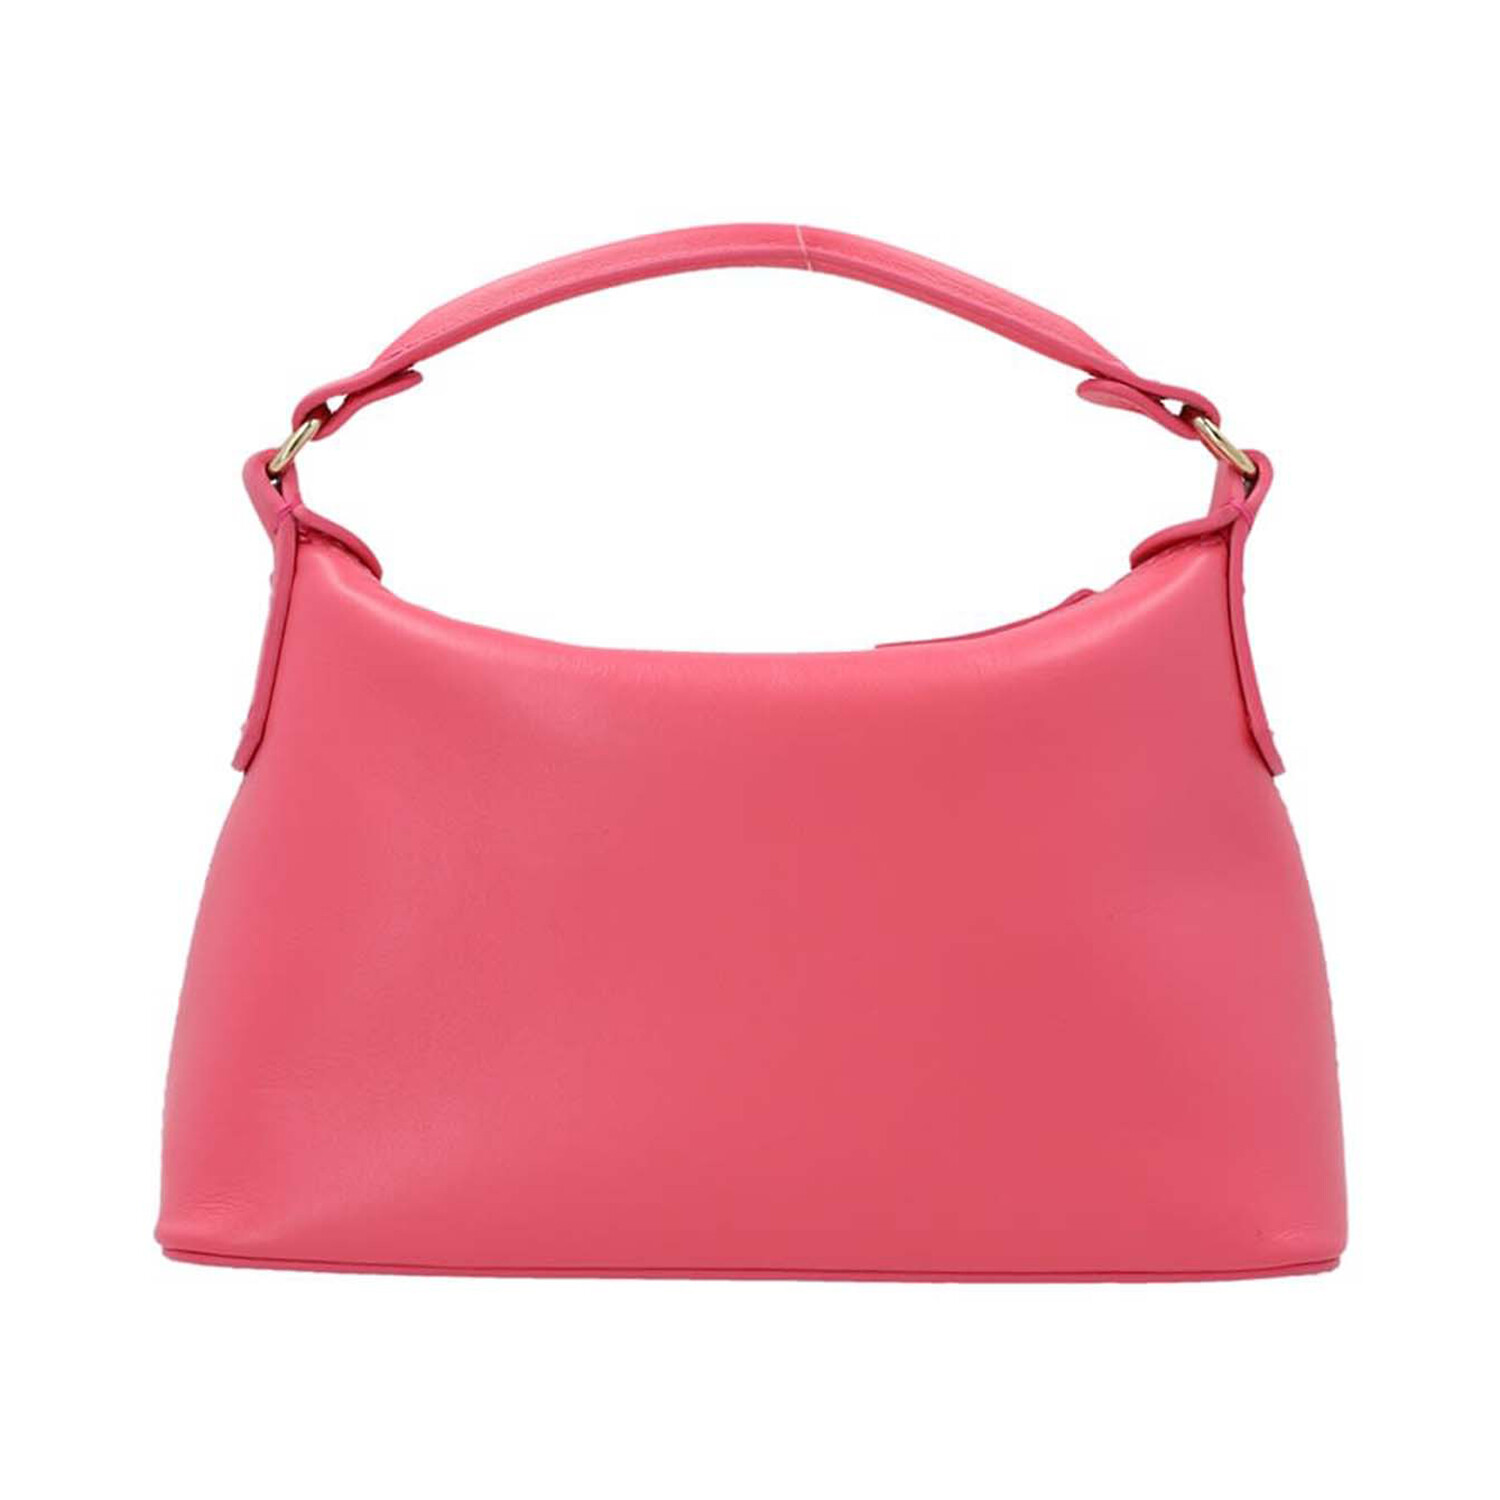 LIU JO // Mini Hobo Leather Bag // Pink - Emporio Armani, Liu Jo ...